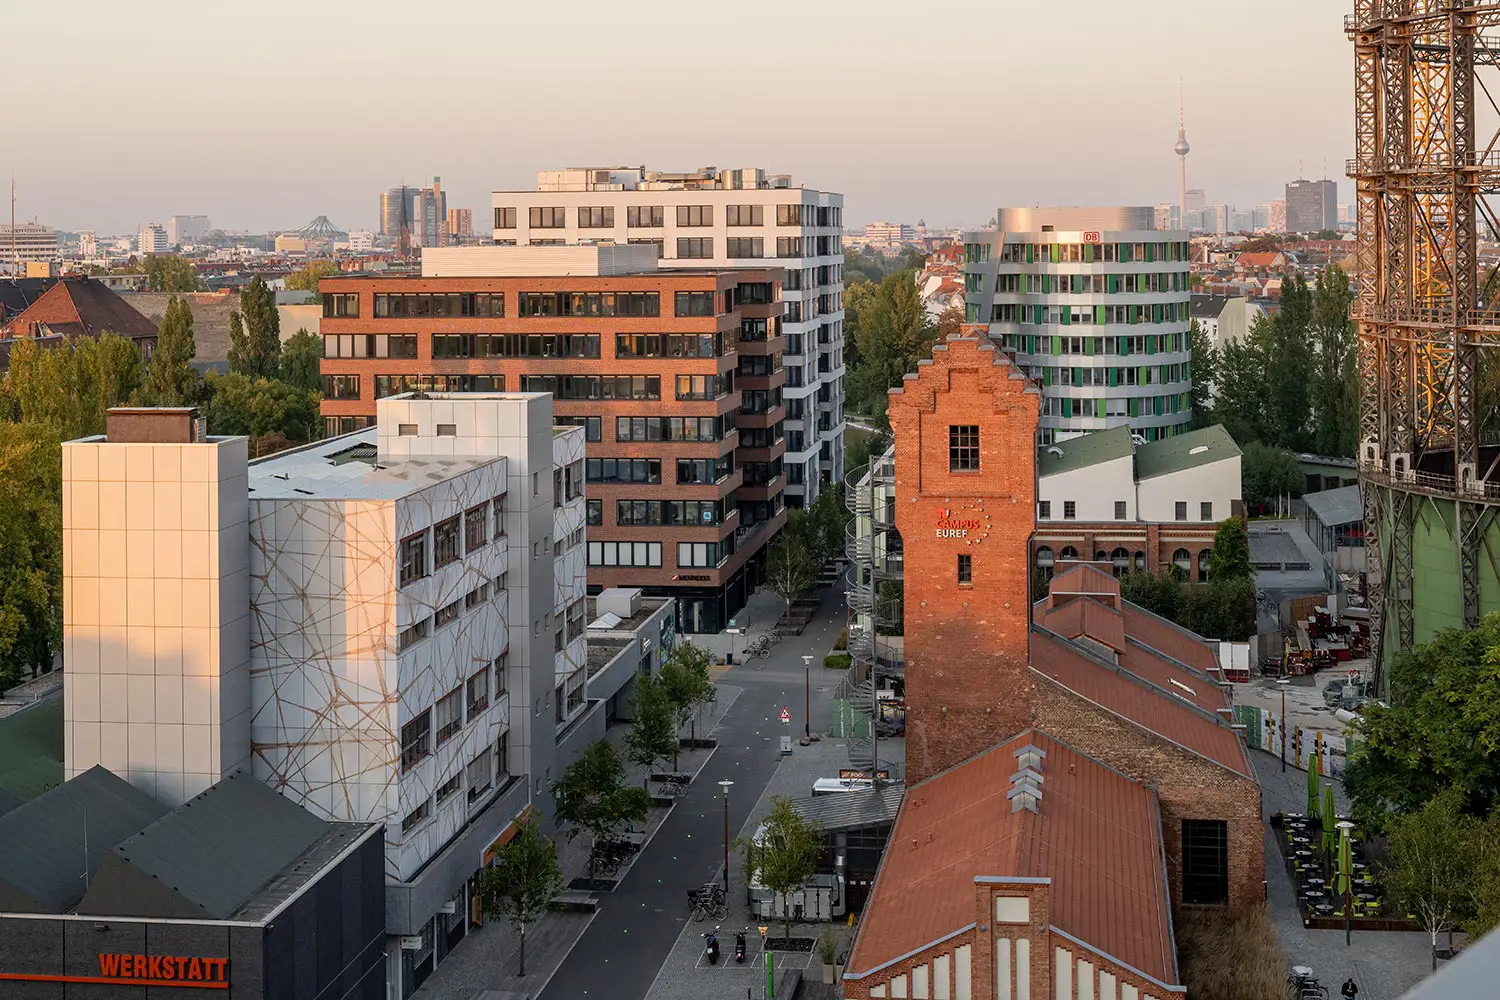 Vue aérienne du campus EUREF de Berlin, où ubitricity a installé son siège social depuis 2008.